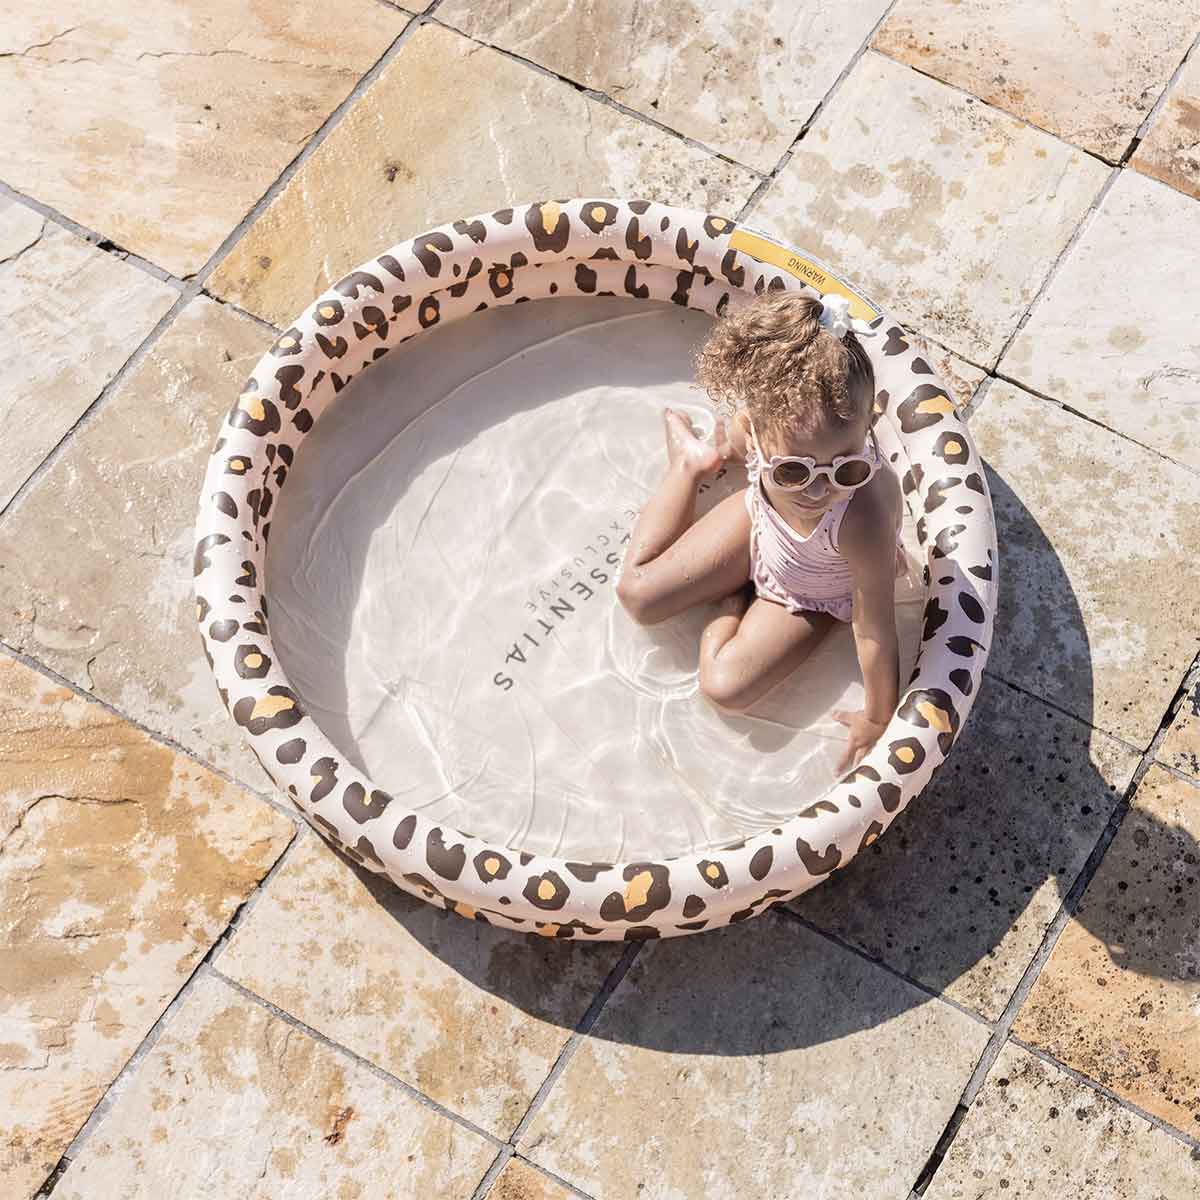 Het Swim Essentials zwembad 100 cm beige leopard is het perfecte accessoire voor een warme dag. Dit leuke opblaasbare zwembadje zorgt voor lekker veel plezier en verkoeling. VanZus.